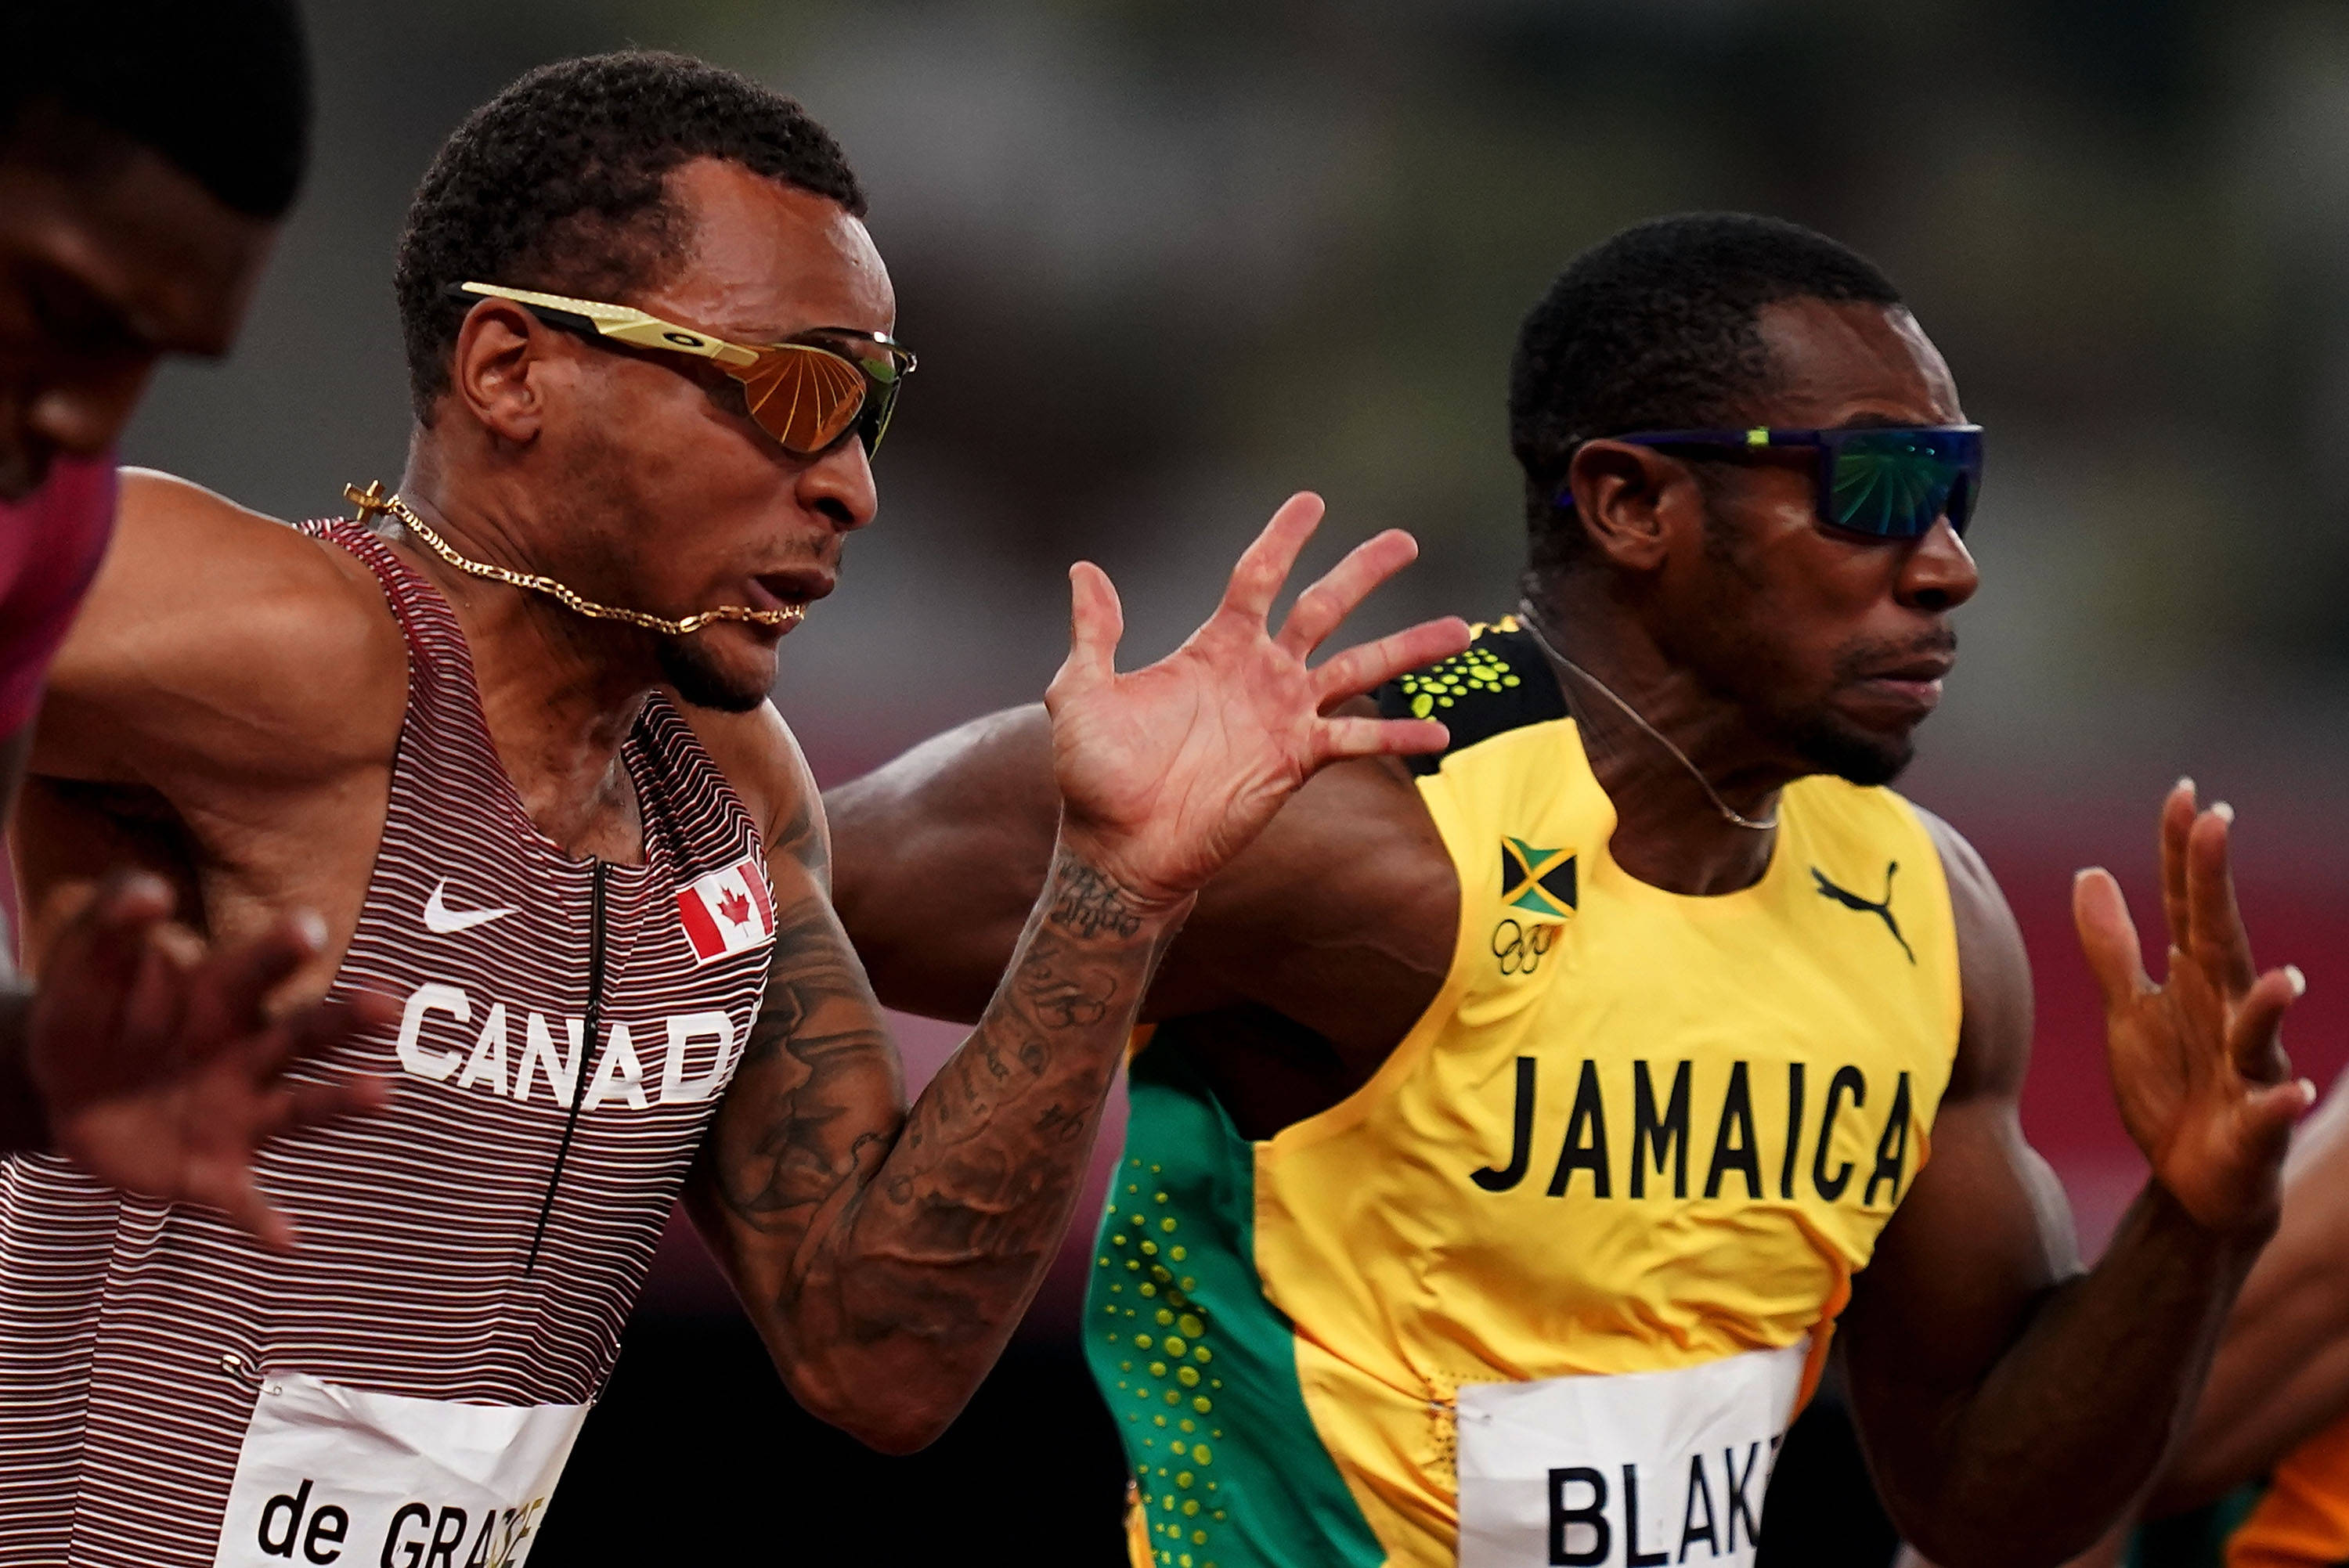 8月1日,加拿大选手德格拉塞(左)与牙买加选手布雷克在男子100米半决赛